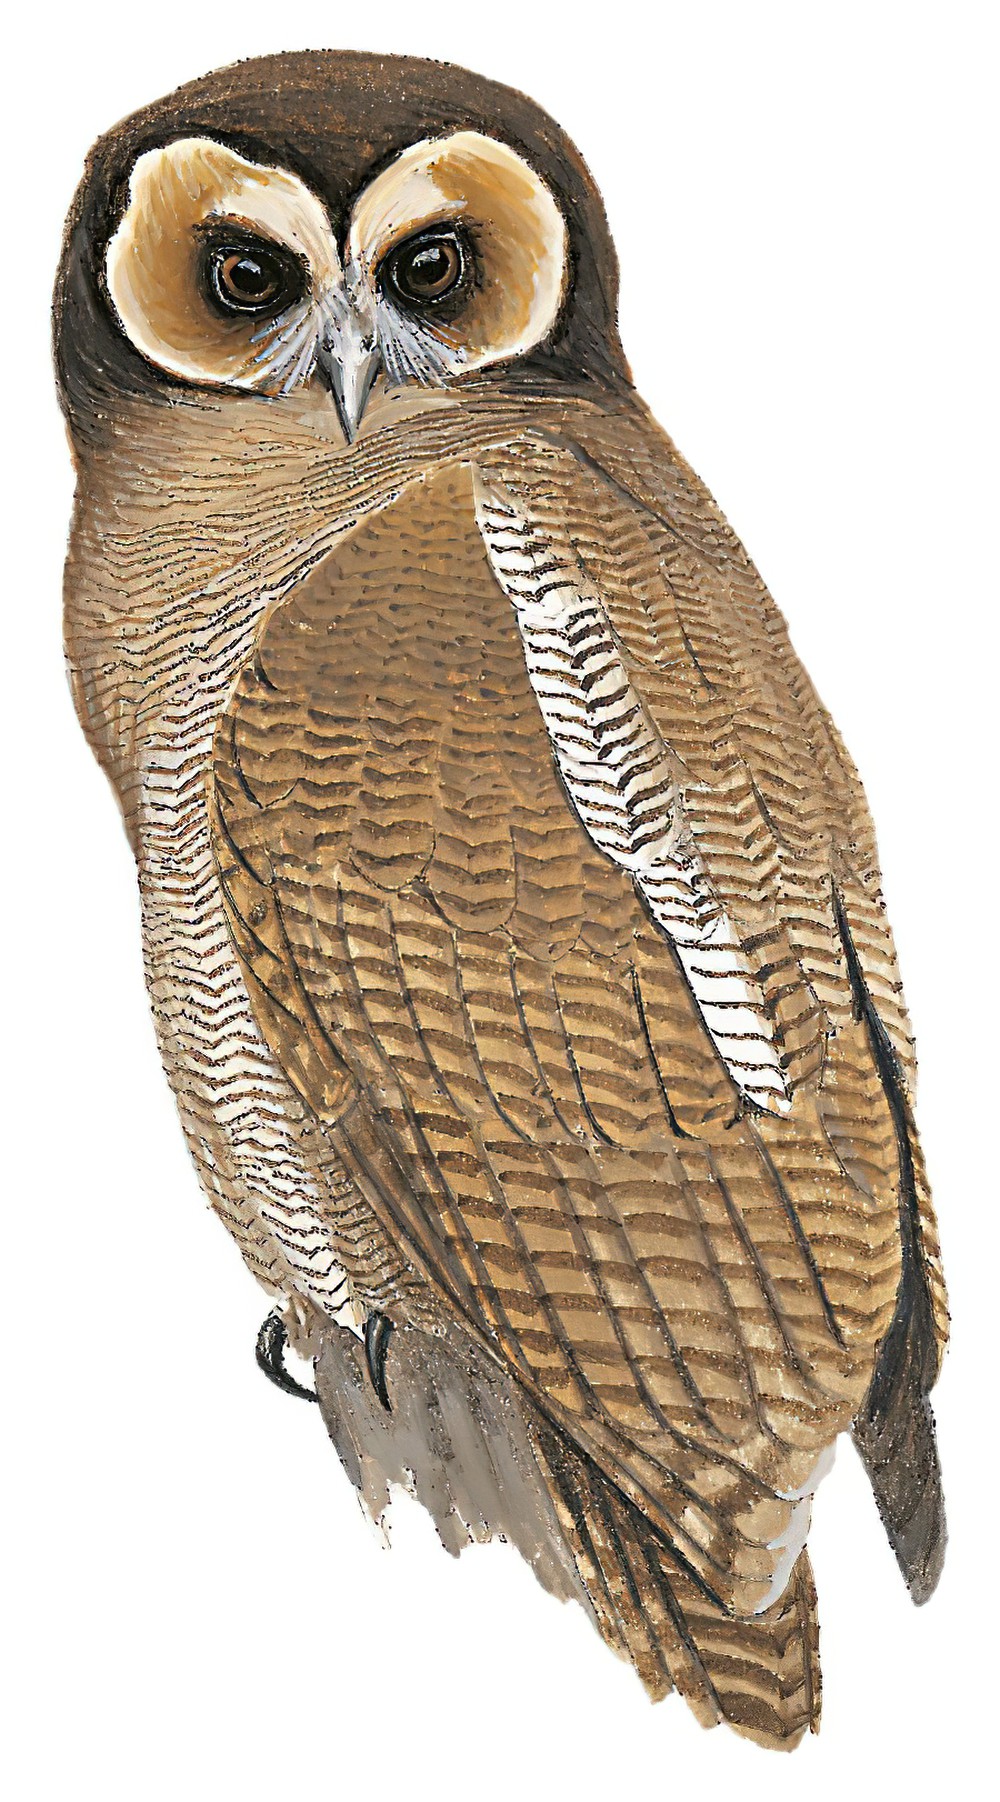 Brown Wood-Owl / Strix leptogrammica